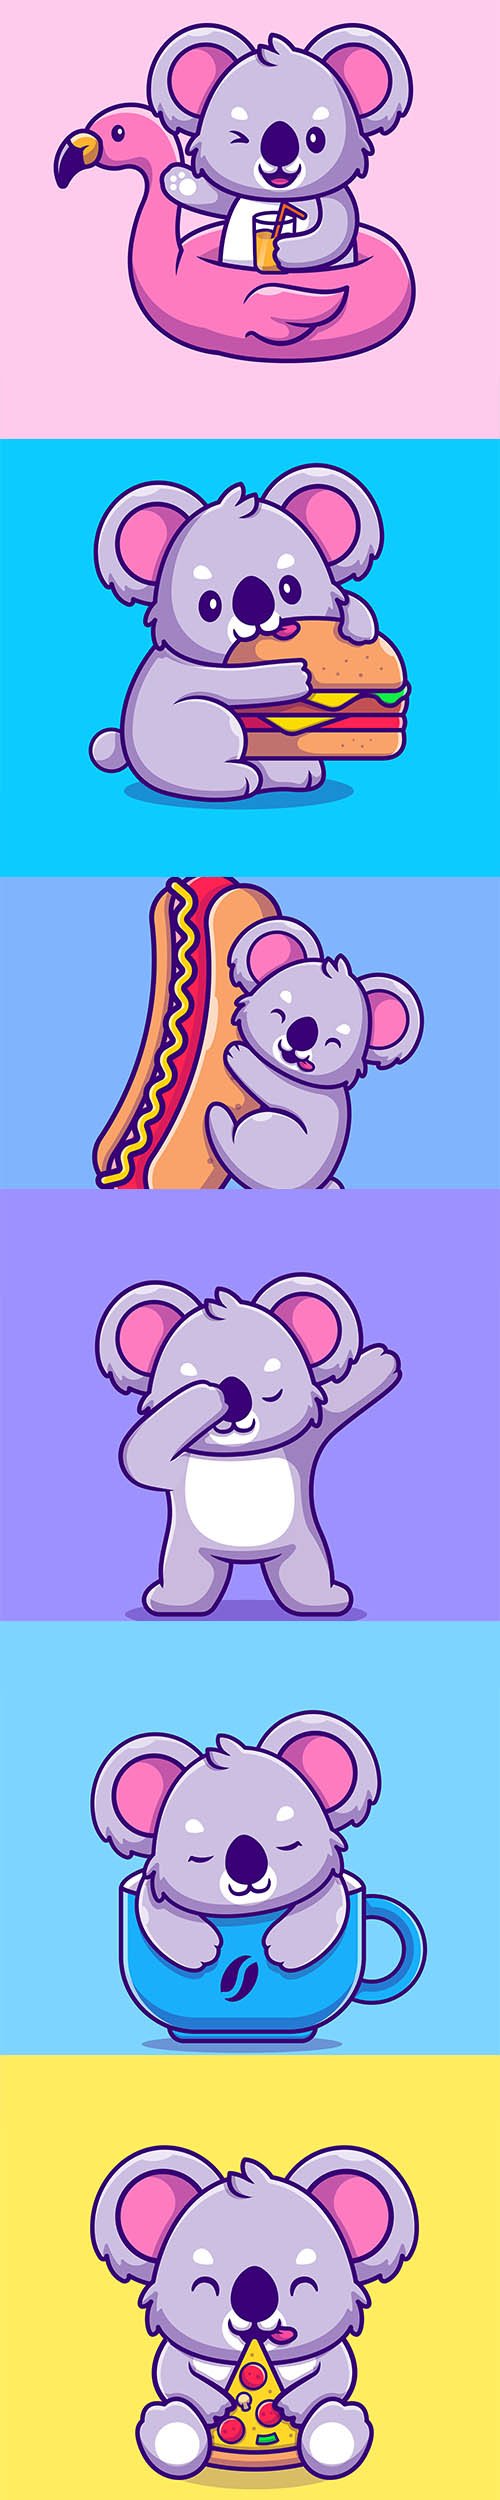 Cute Koala Illustrations